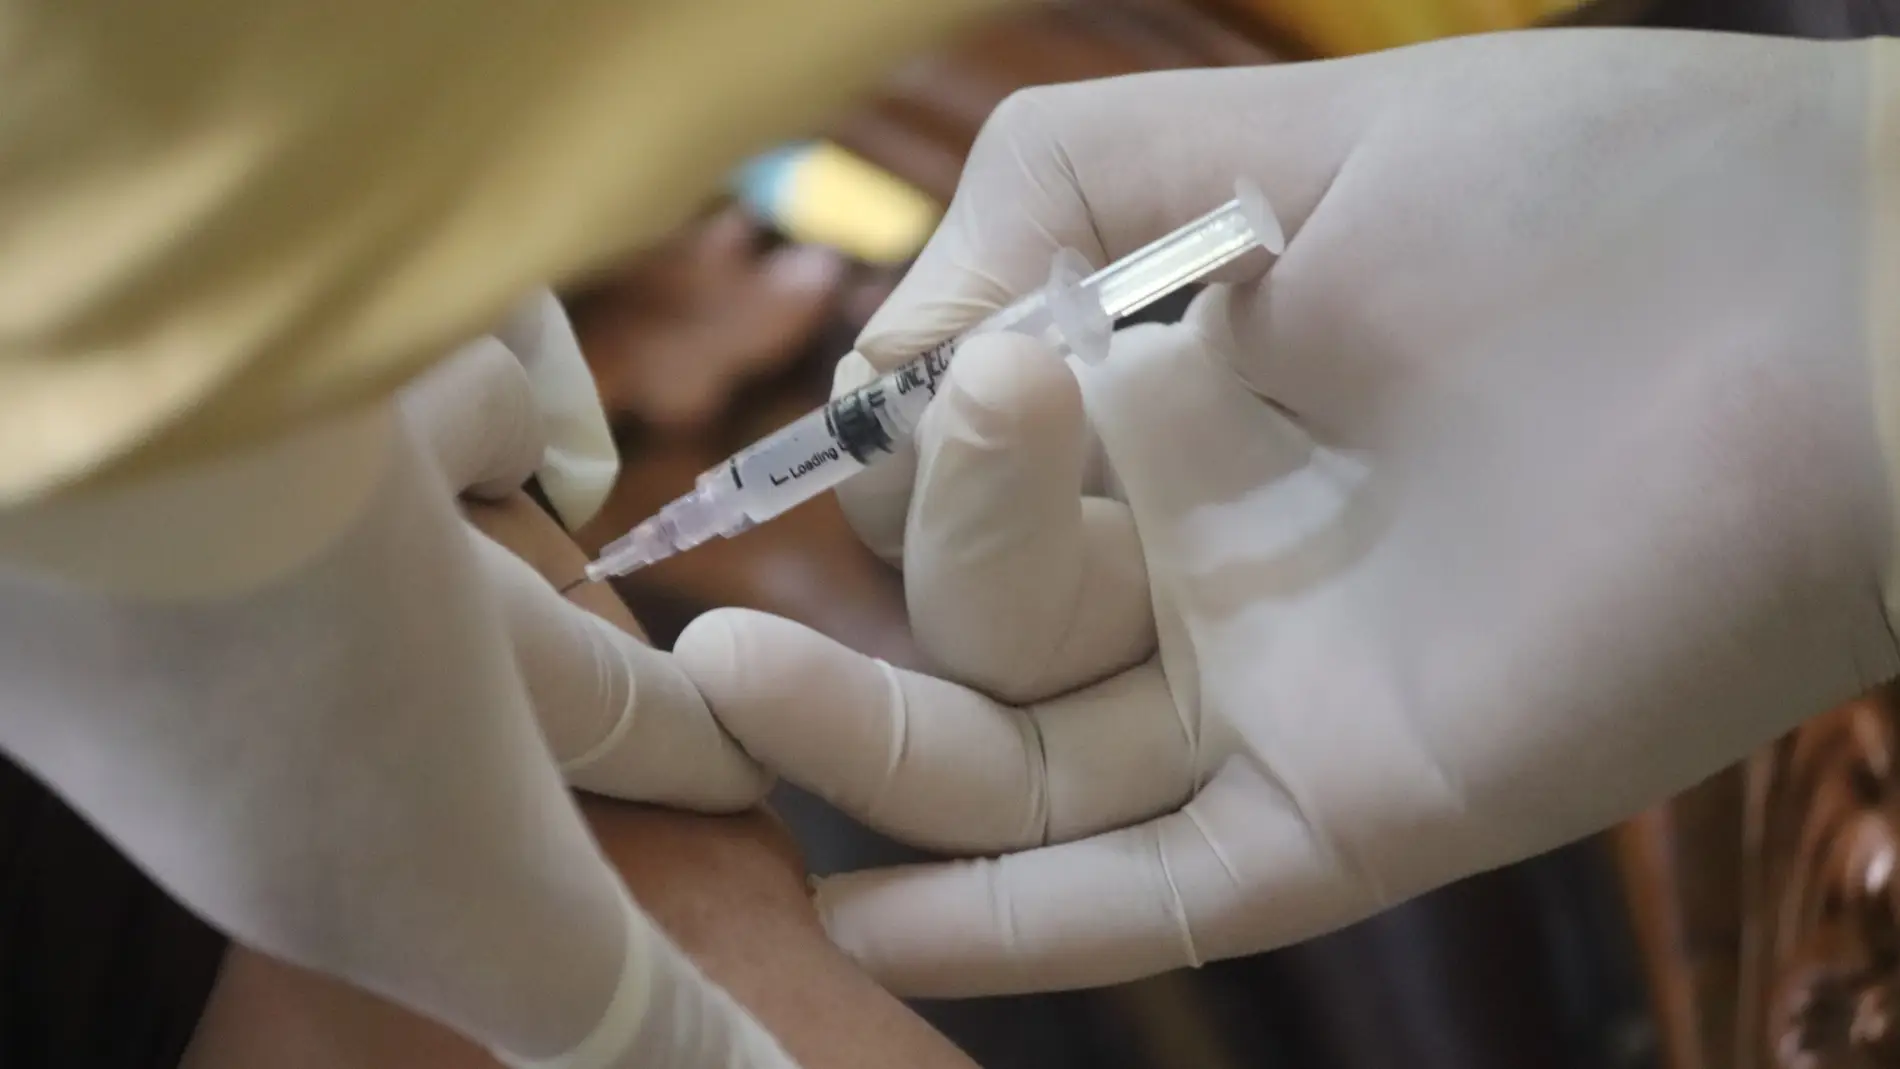 Una persona recibe la vacuna contra el coronavirus en una imagen de archivo/ Unsplash